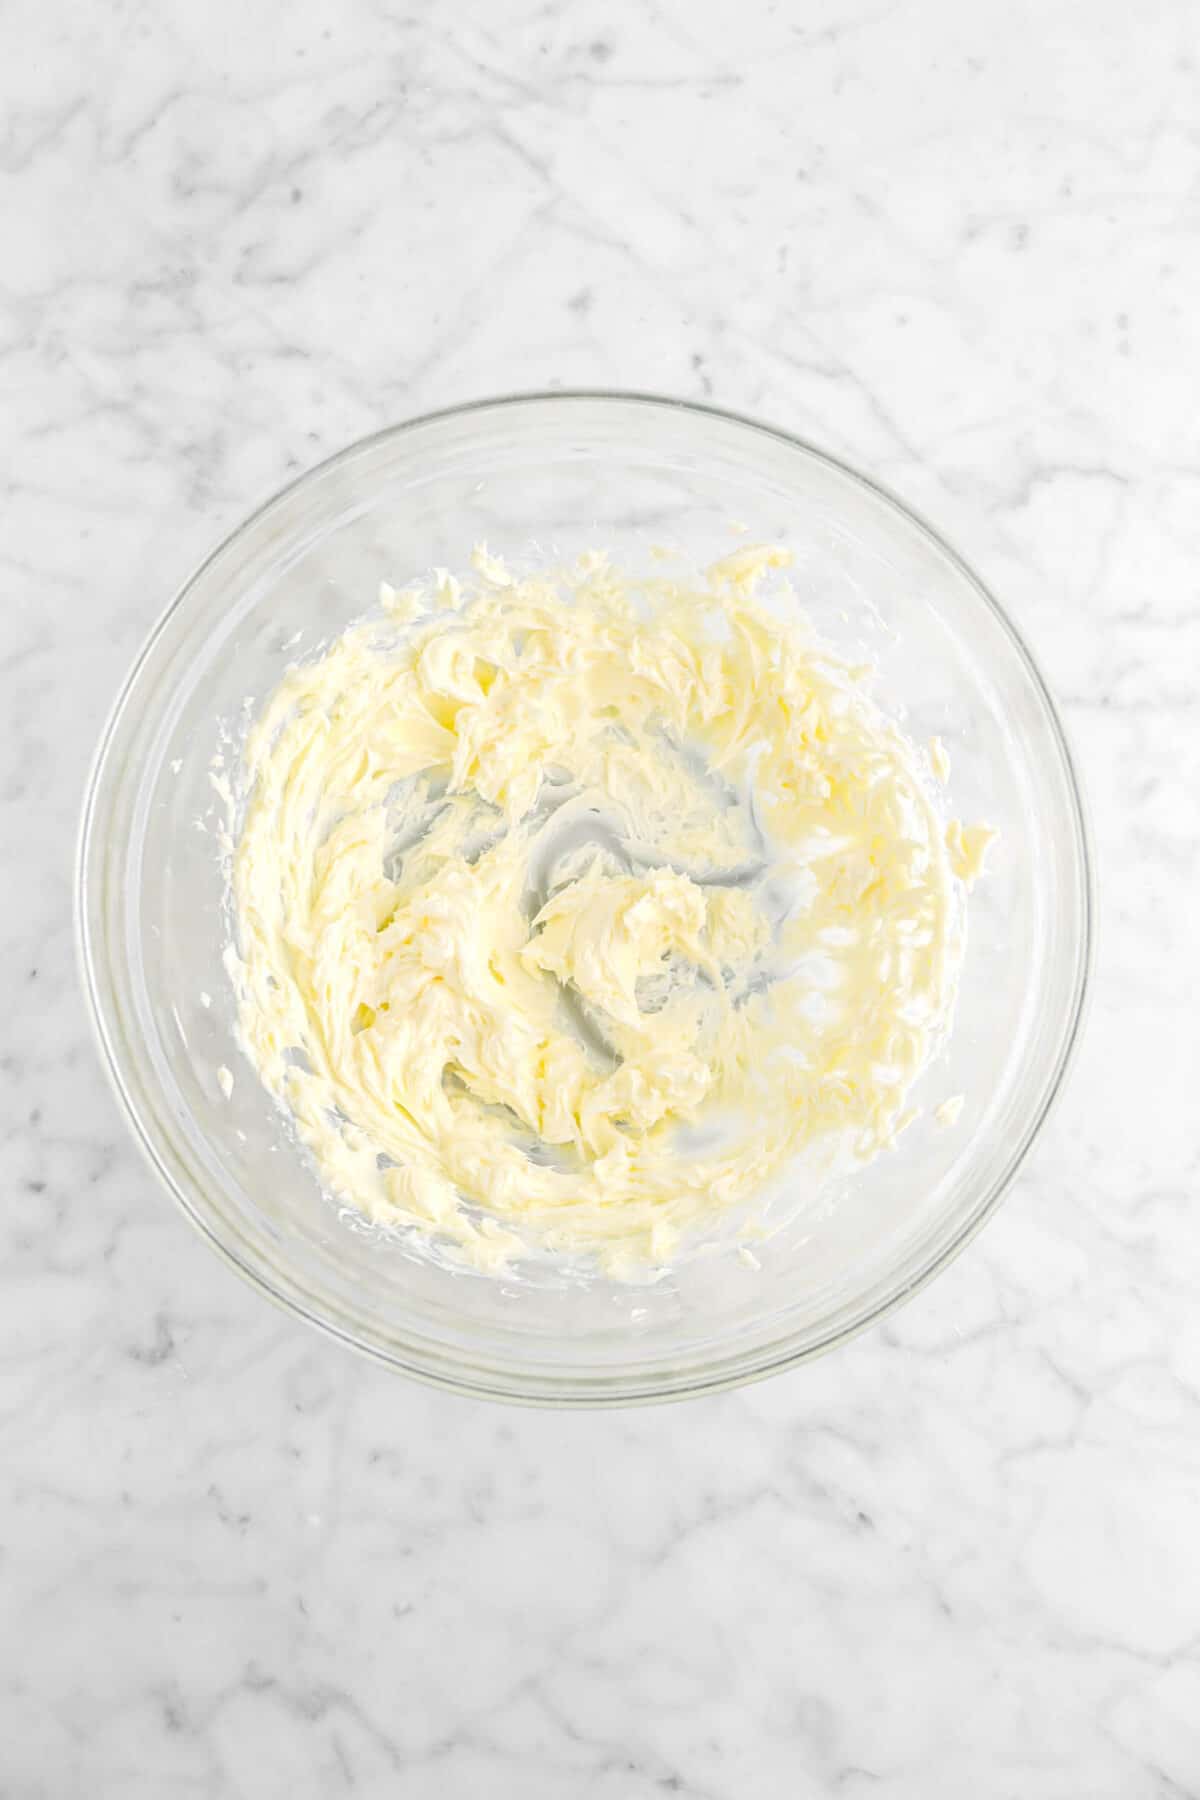 butter beaten until fluffy in glass bowl